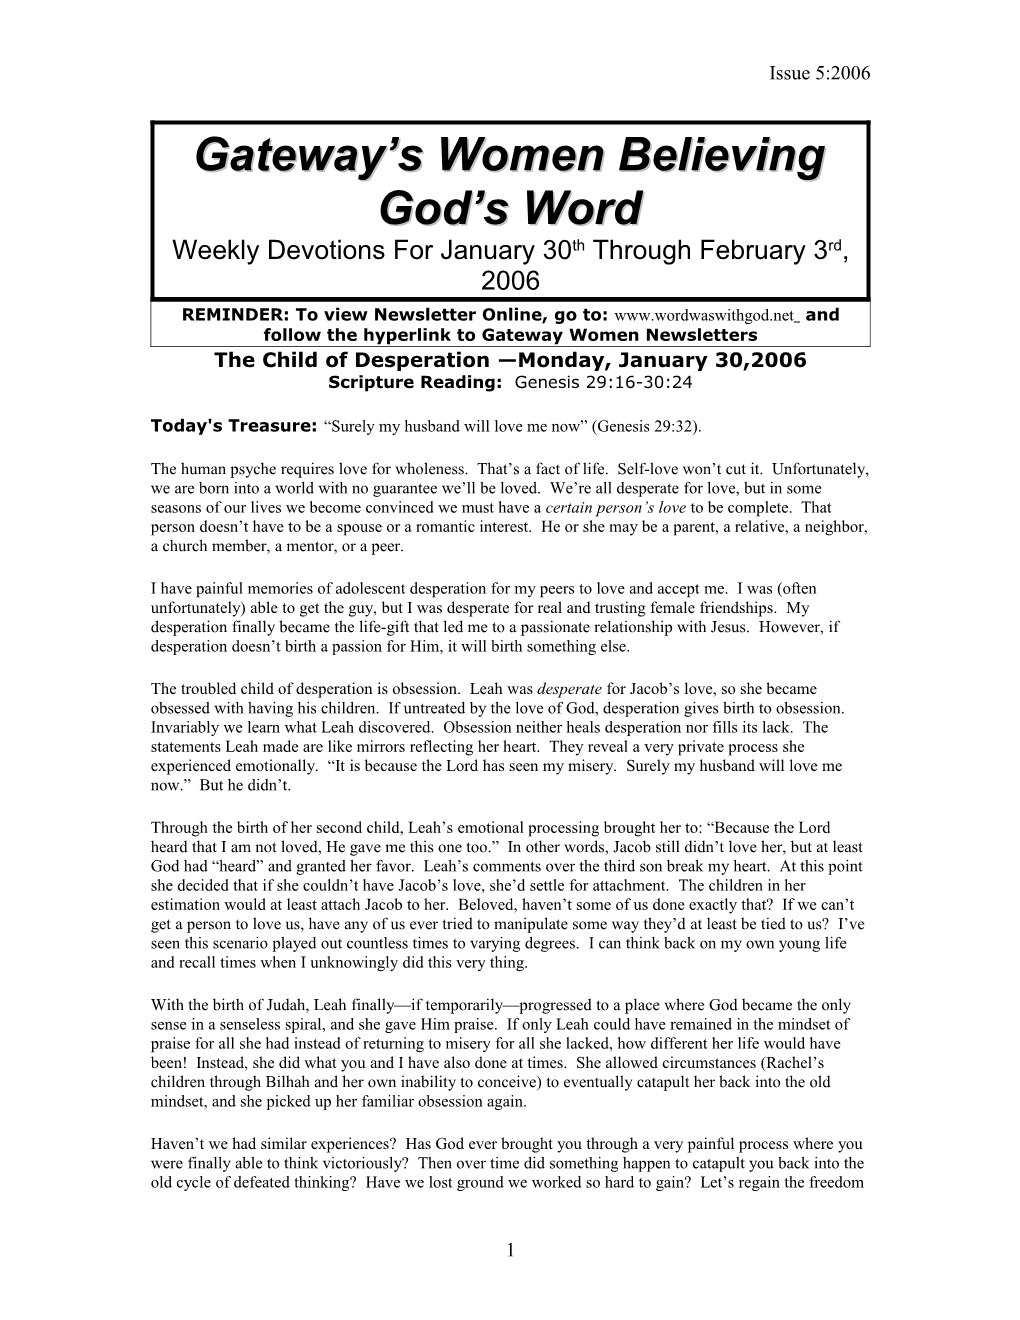 Gateway S Women Believing God S Word